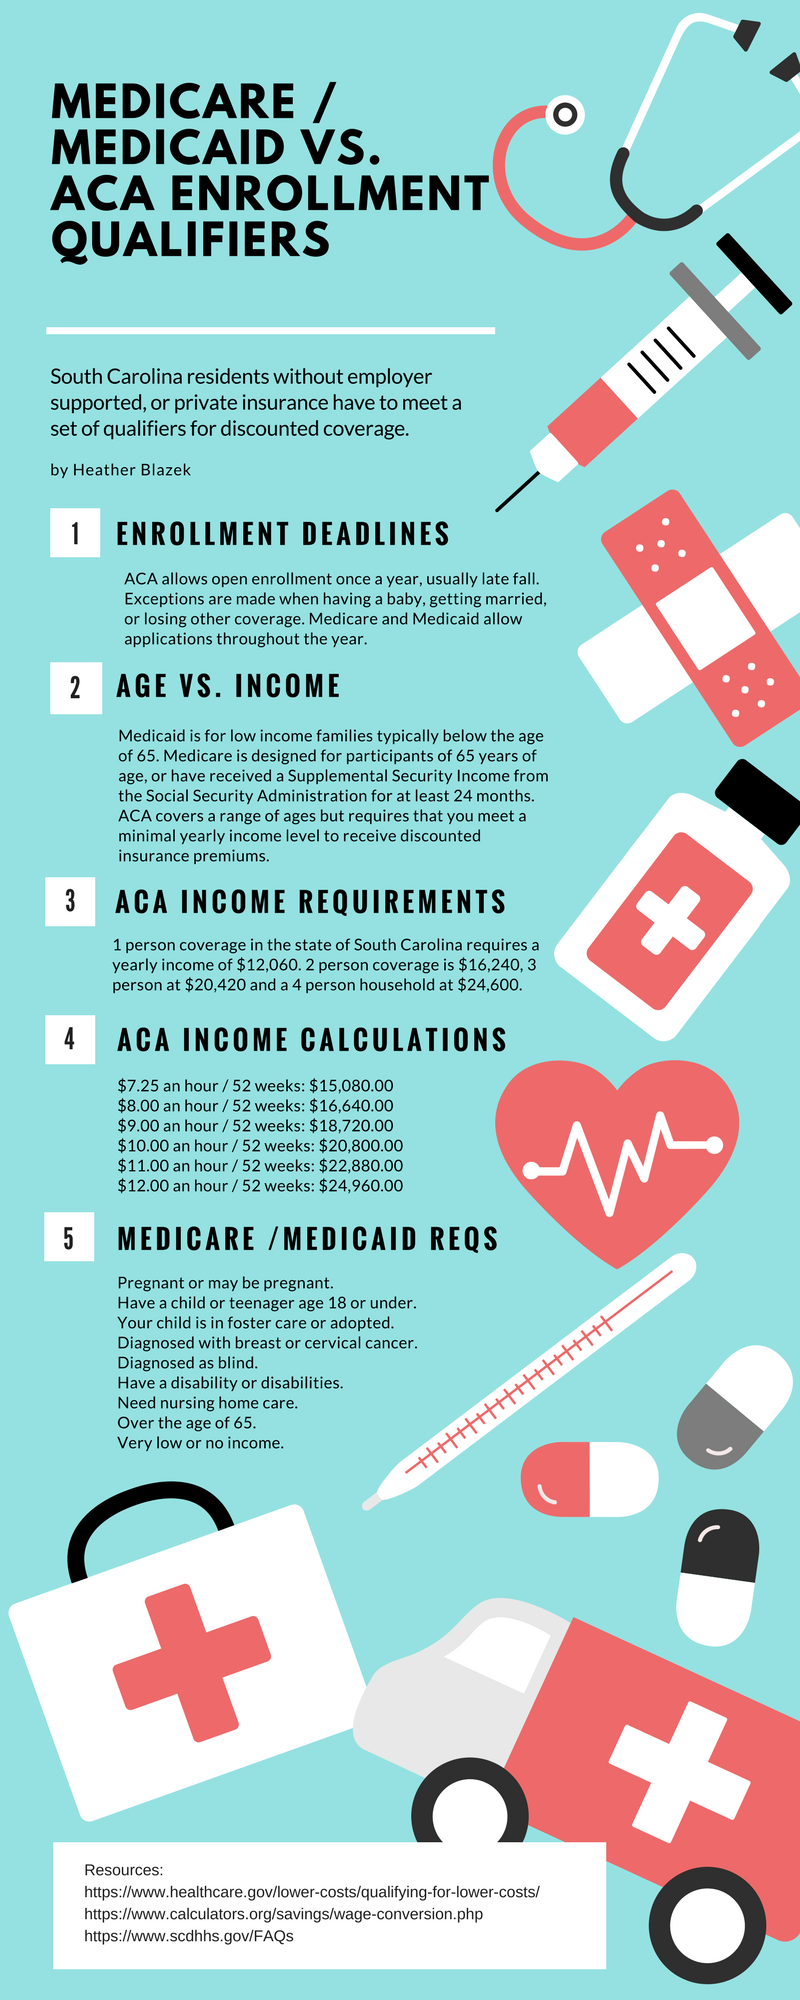 Medicare / Medicaid Vs. ACA Enrollment Qualifiers